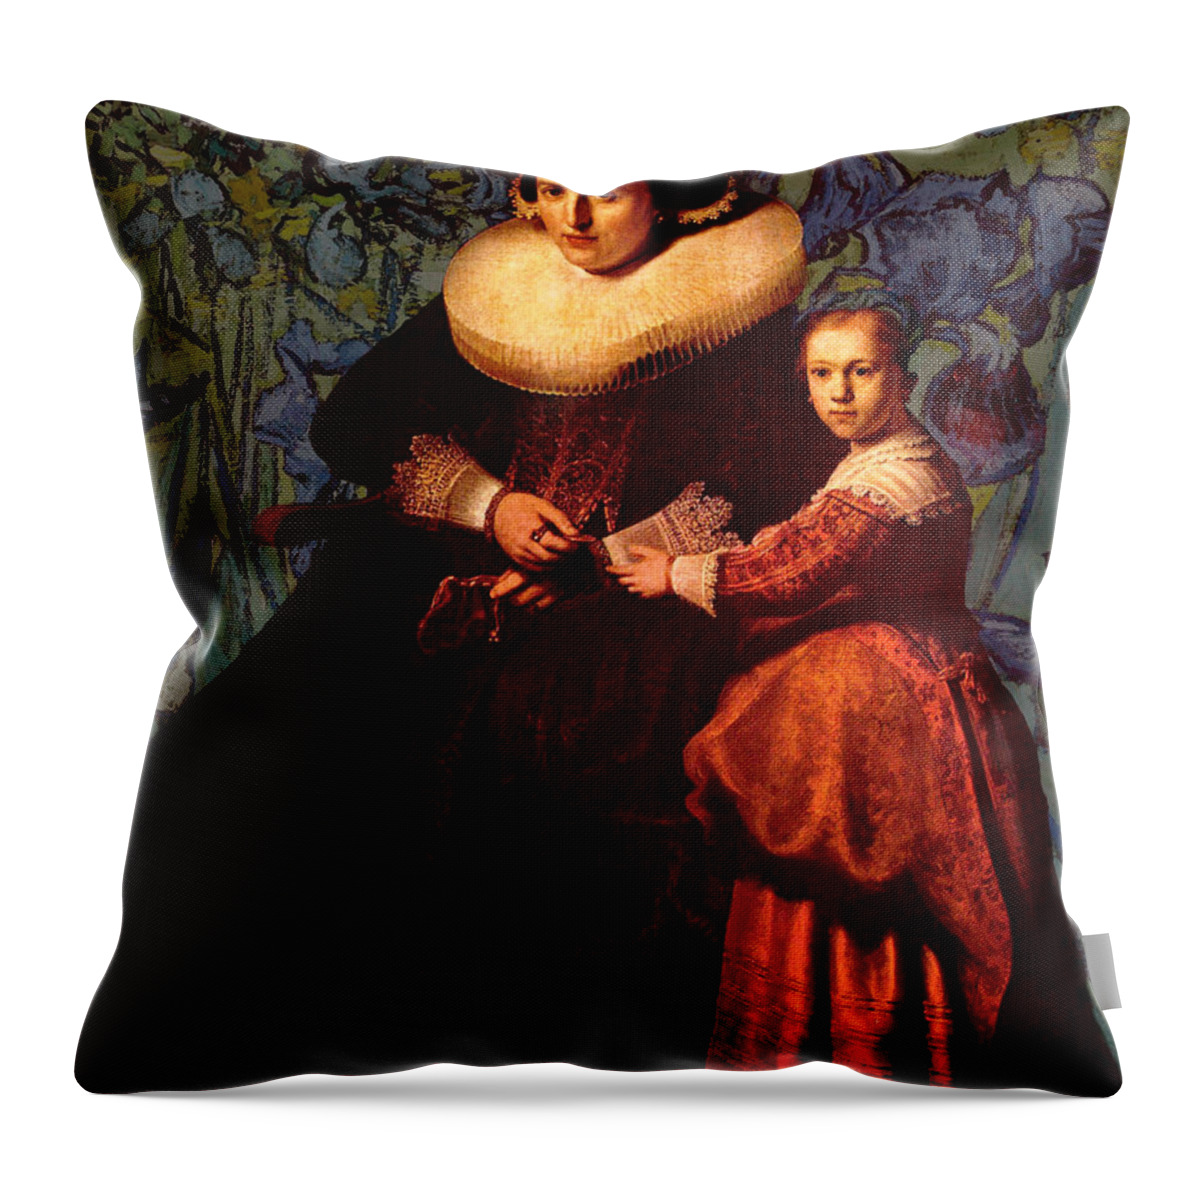 Post Modern Throw Pillow featuring the digital art Blend II Rembrandt by David Bridburg